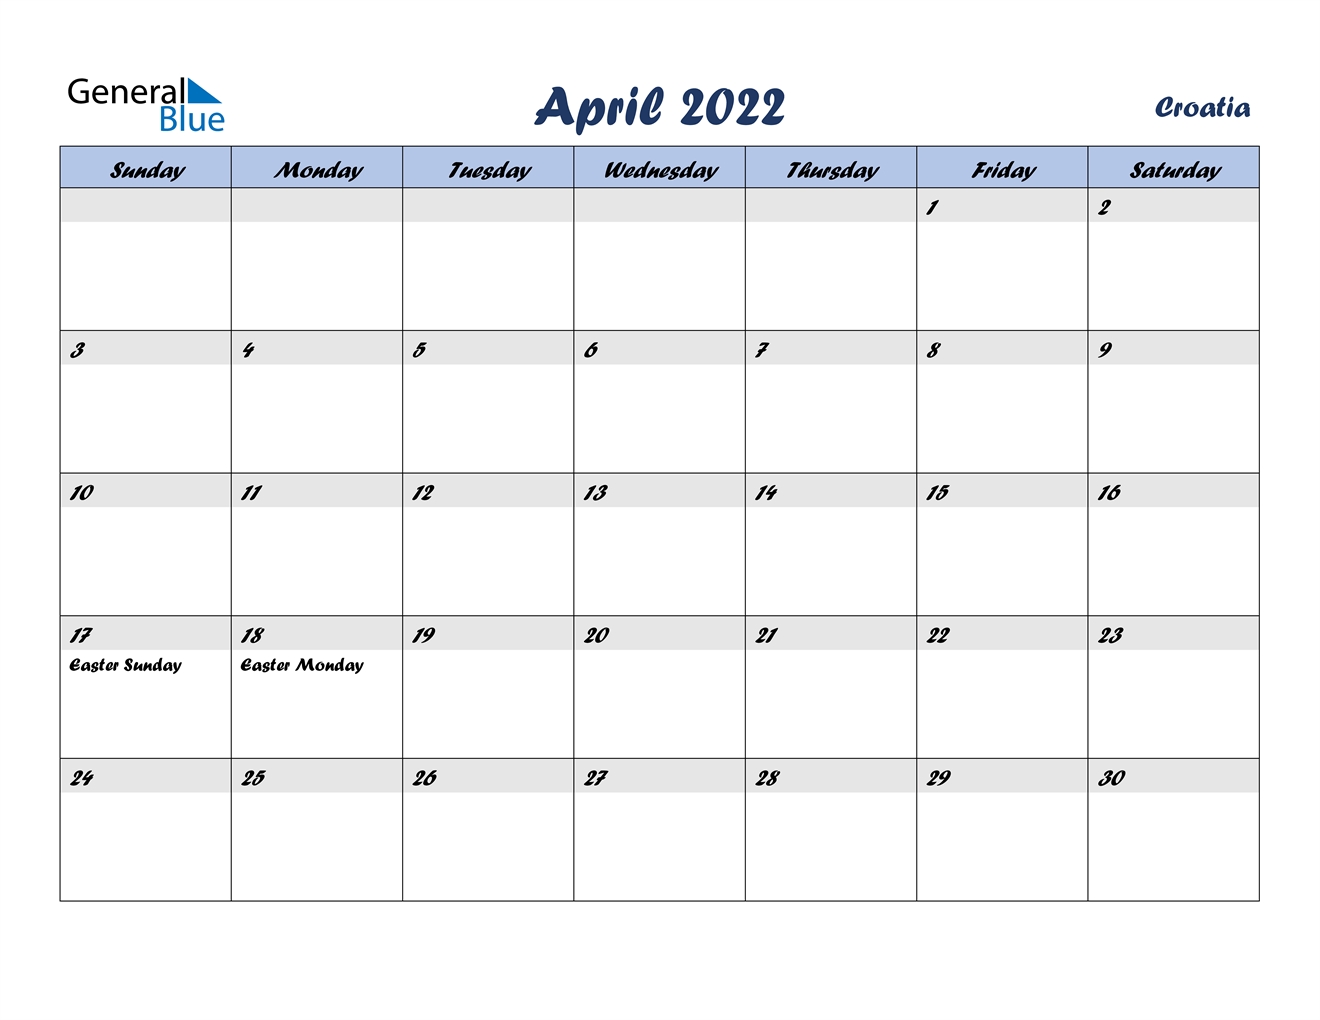 April 2022 Calendar - Croatia